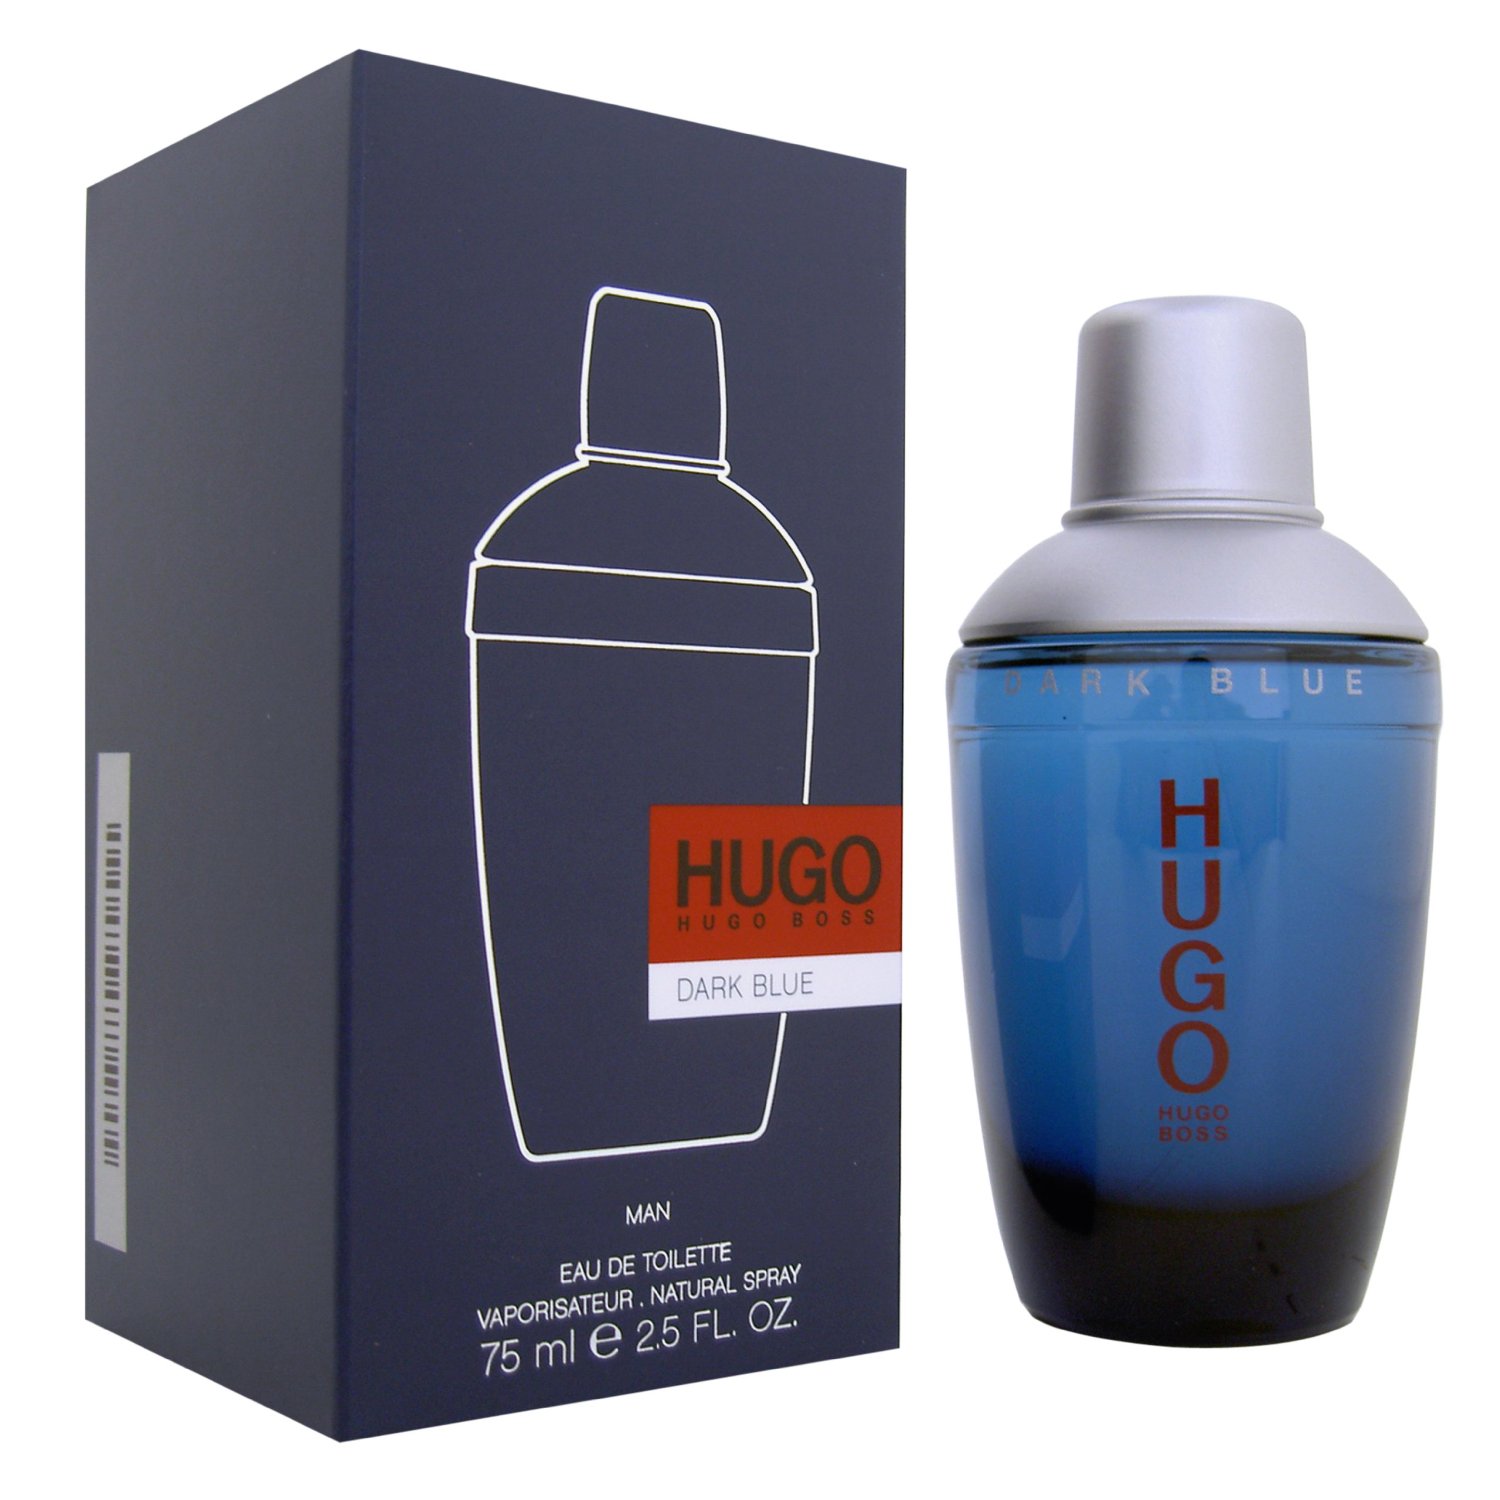 Hugo Boss Dark Blue 75ml EDT for Men - 2950 TK (100% Original)